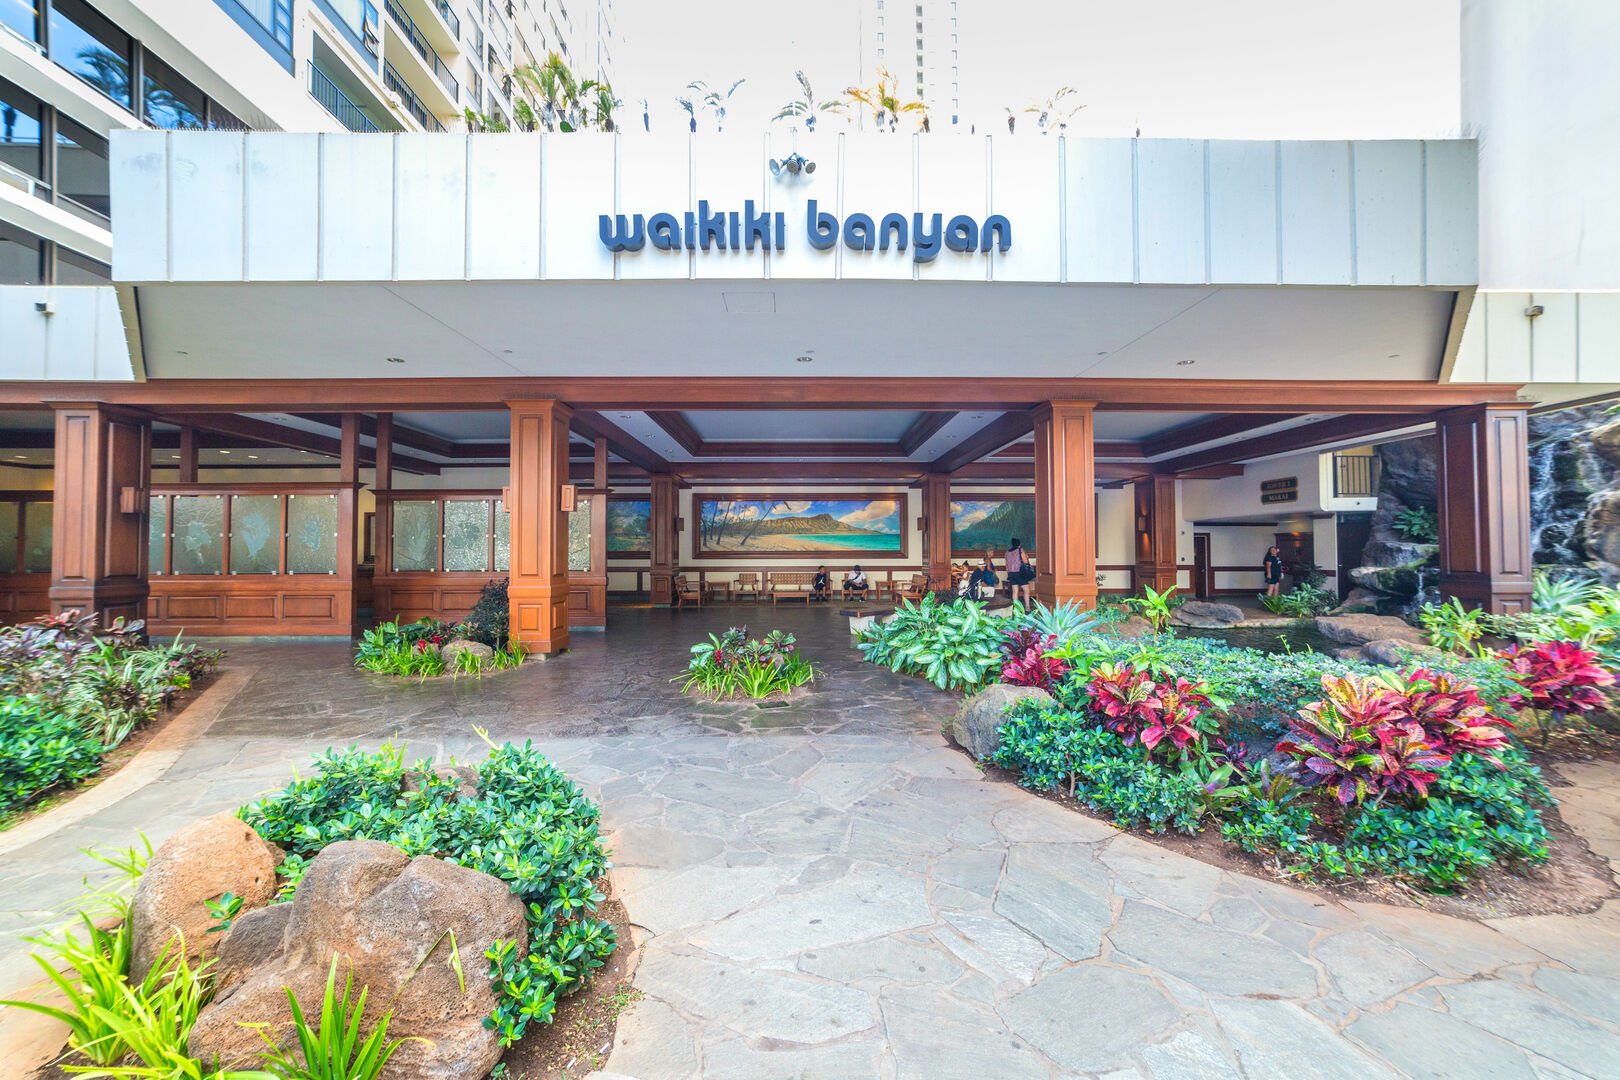 Waikiki Banyan Towers